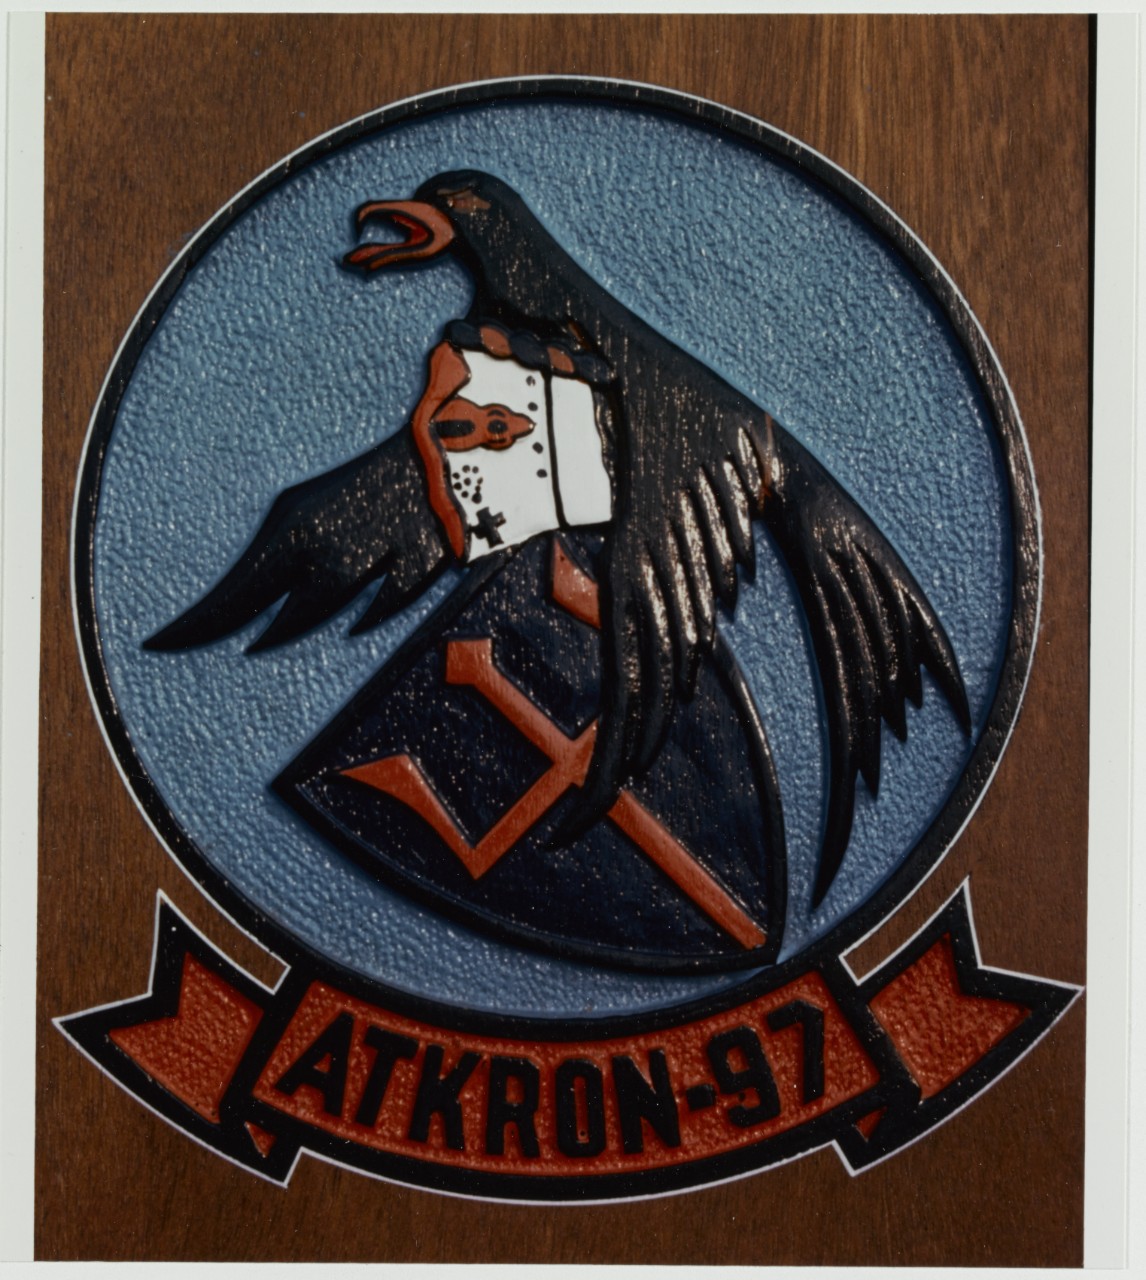 Insignia: Attack Squadron 97 (VA-97) Atkron-97